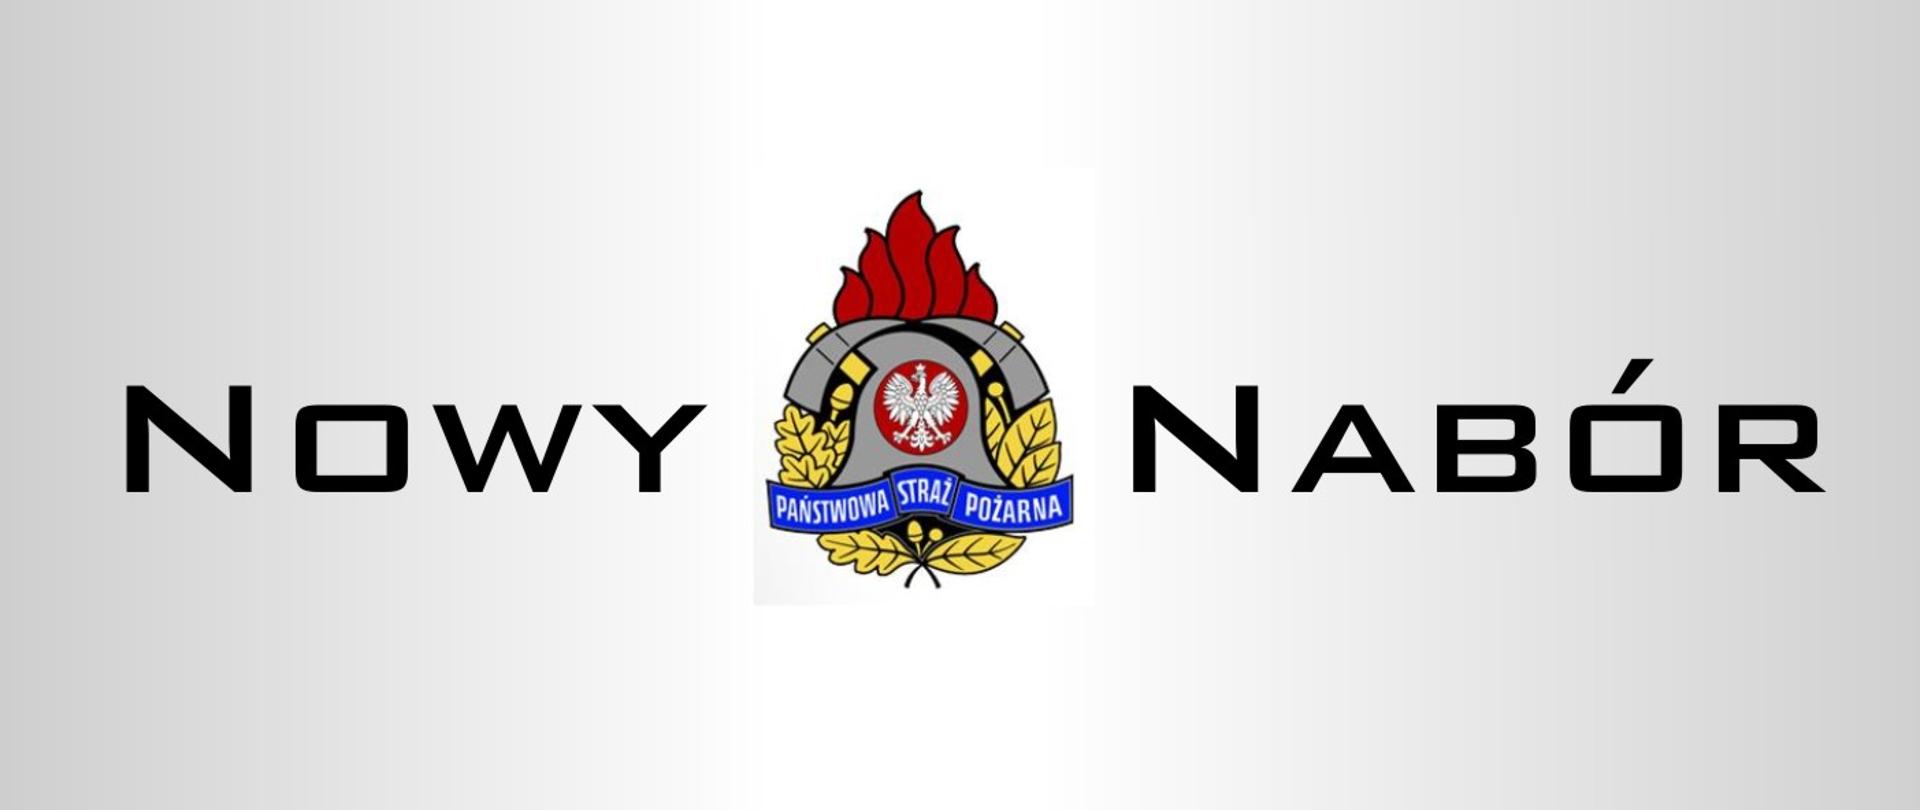 Logotyp Państwowej Straży Pożarnej na szarym tle z napisem "Nowy nabór"